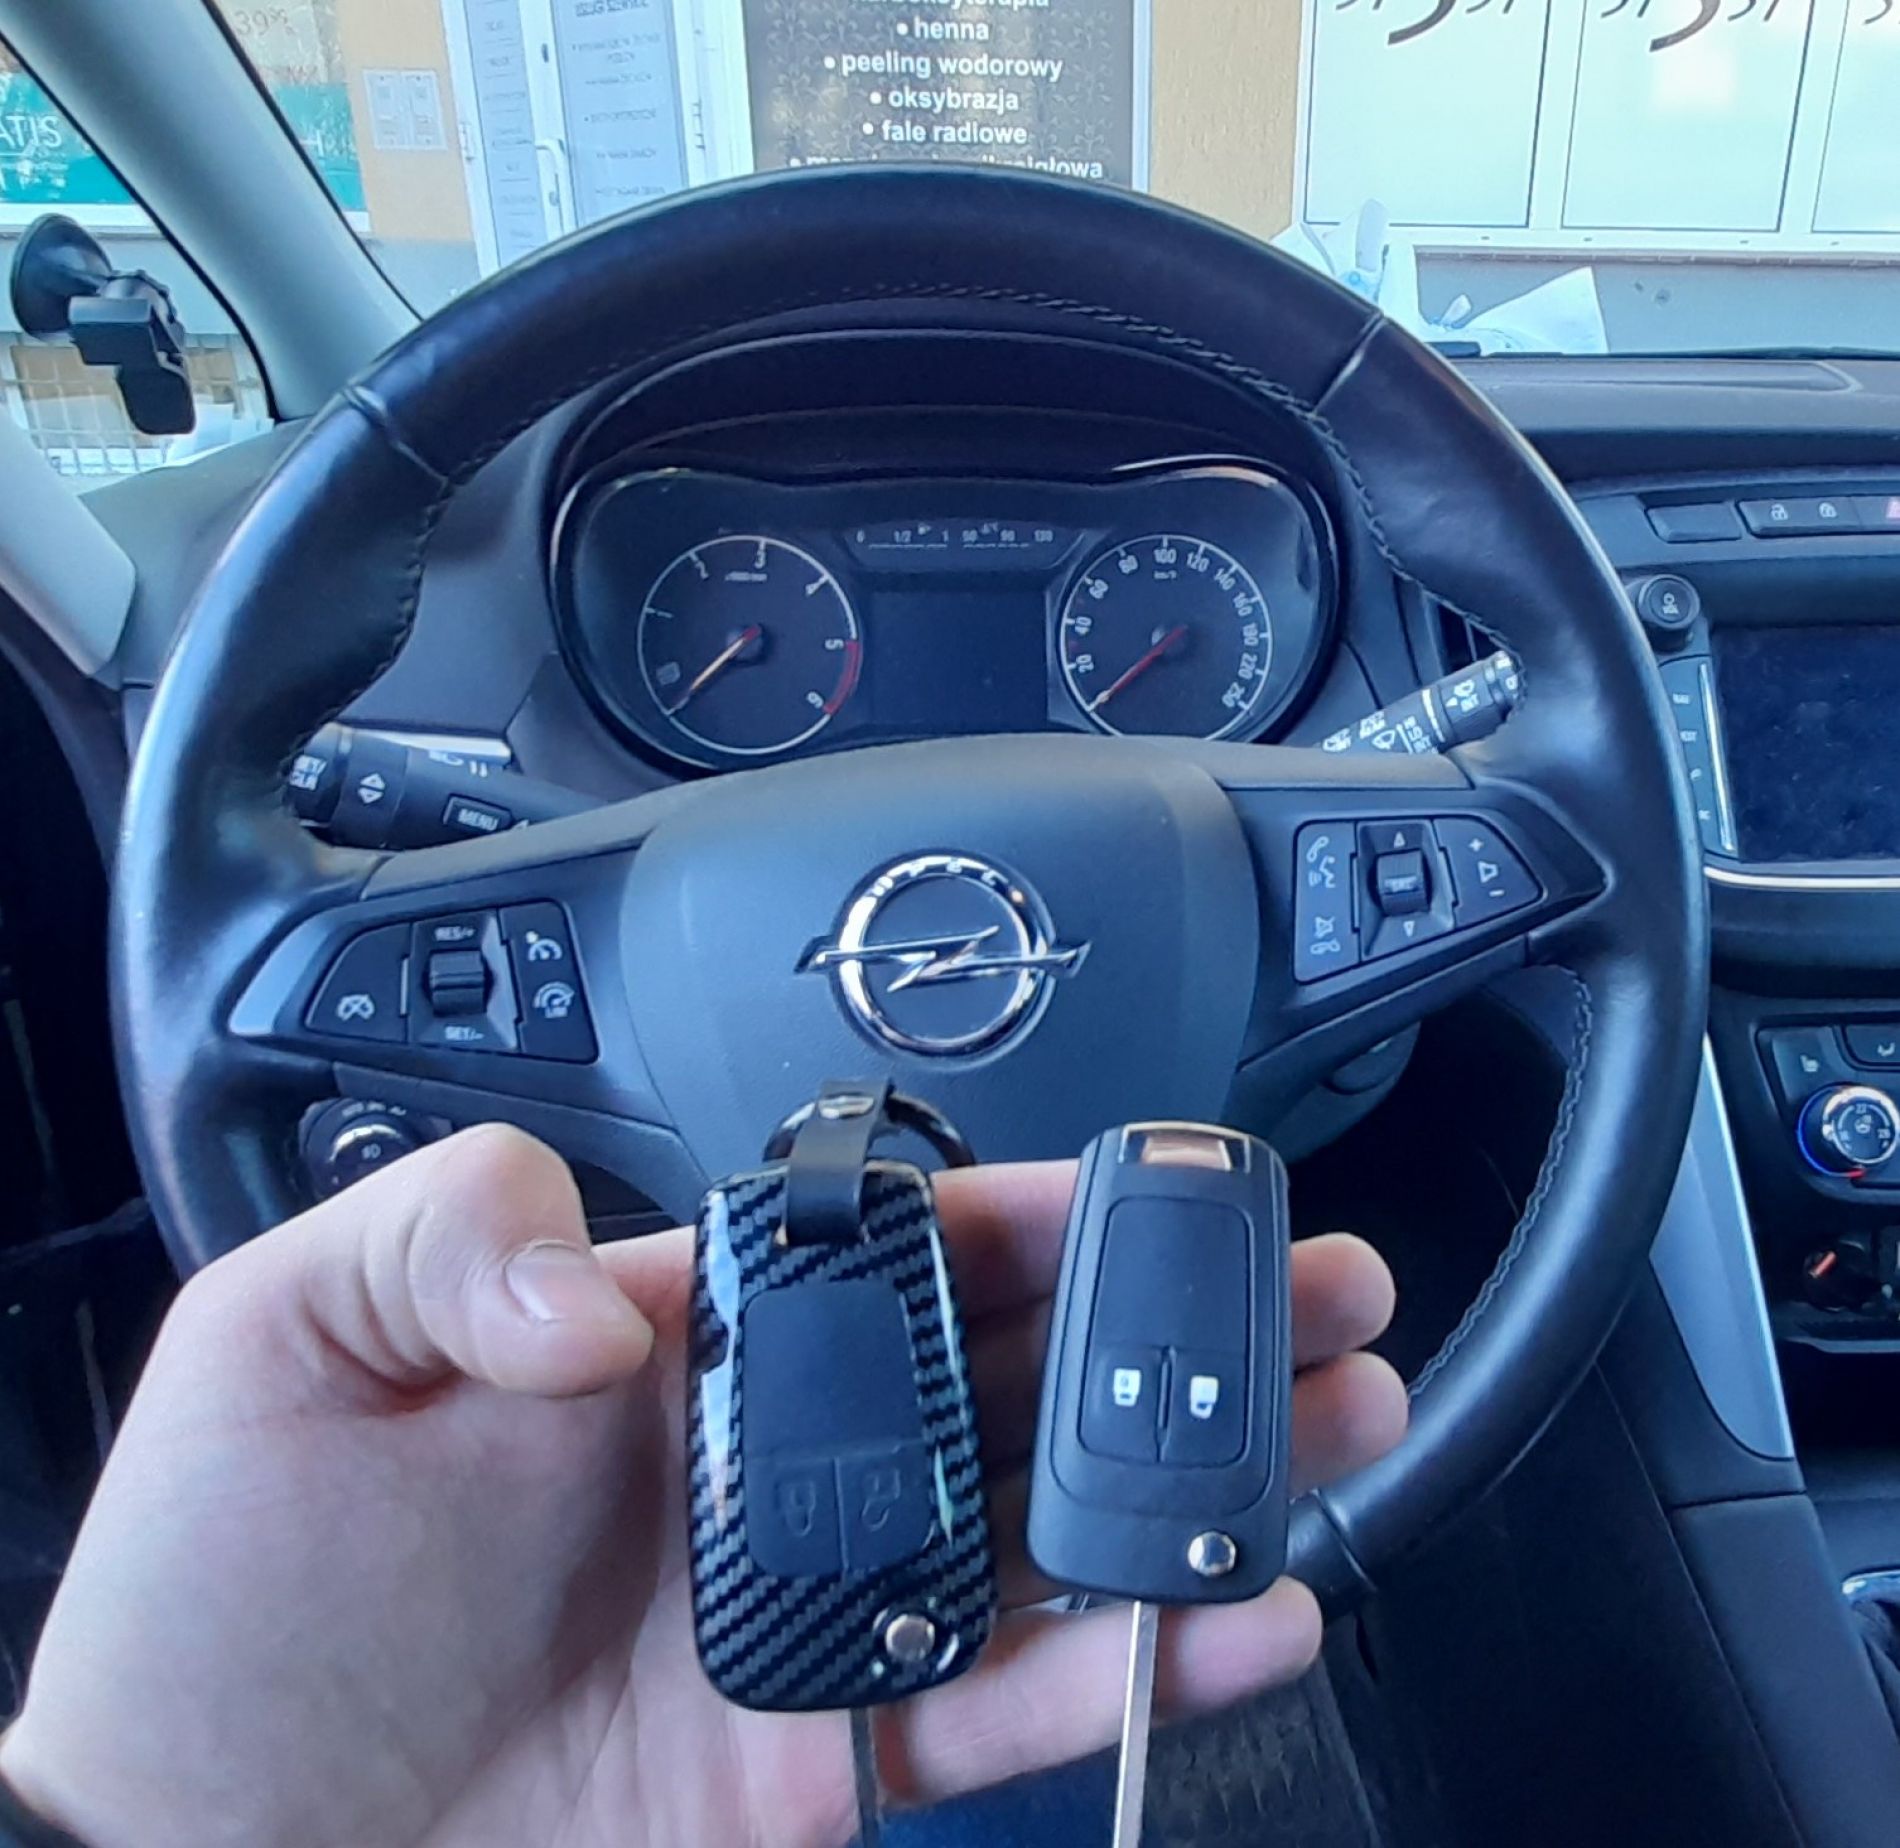 Dorobienie kluczyka zapasowego do auta Opel Zafira z 2017 roku